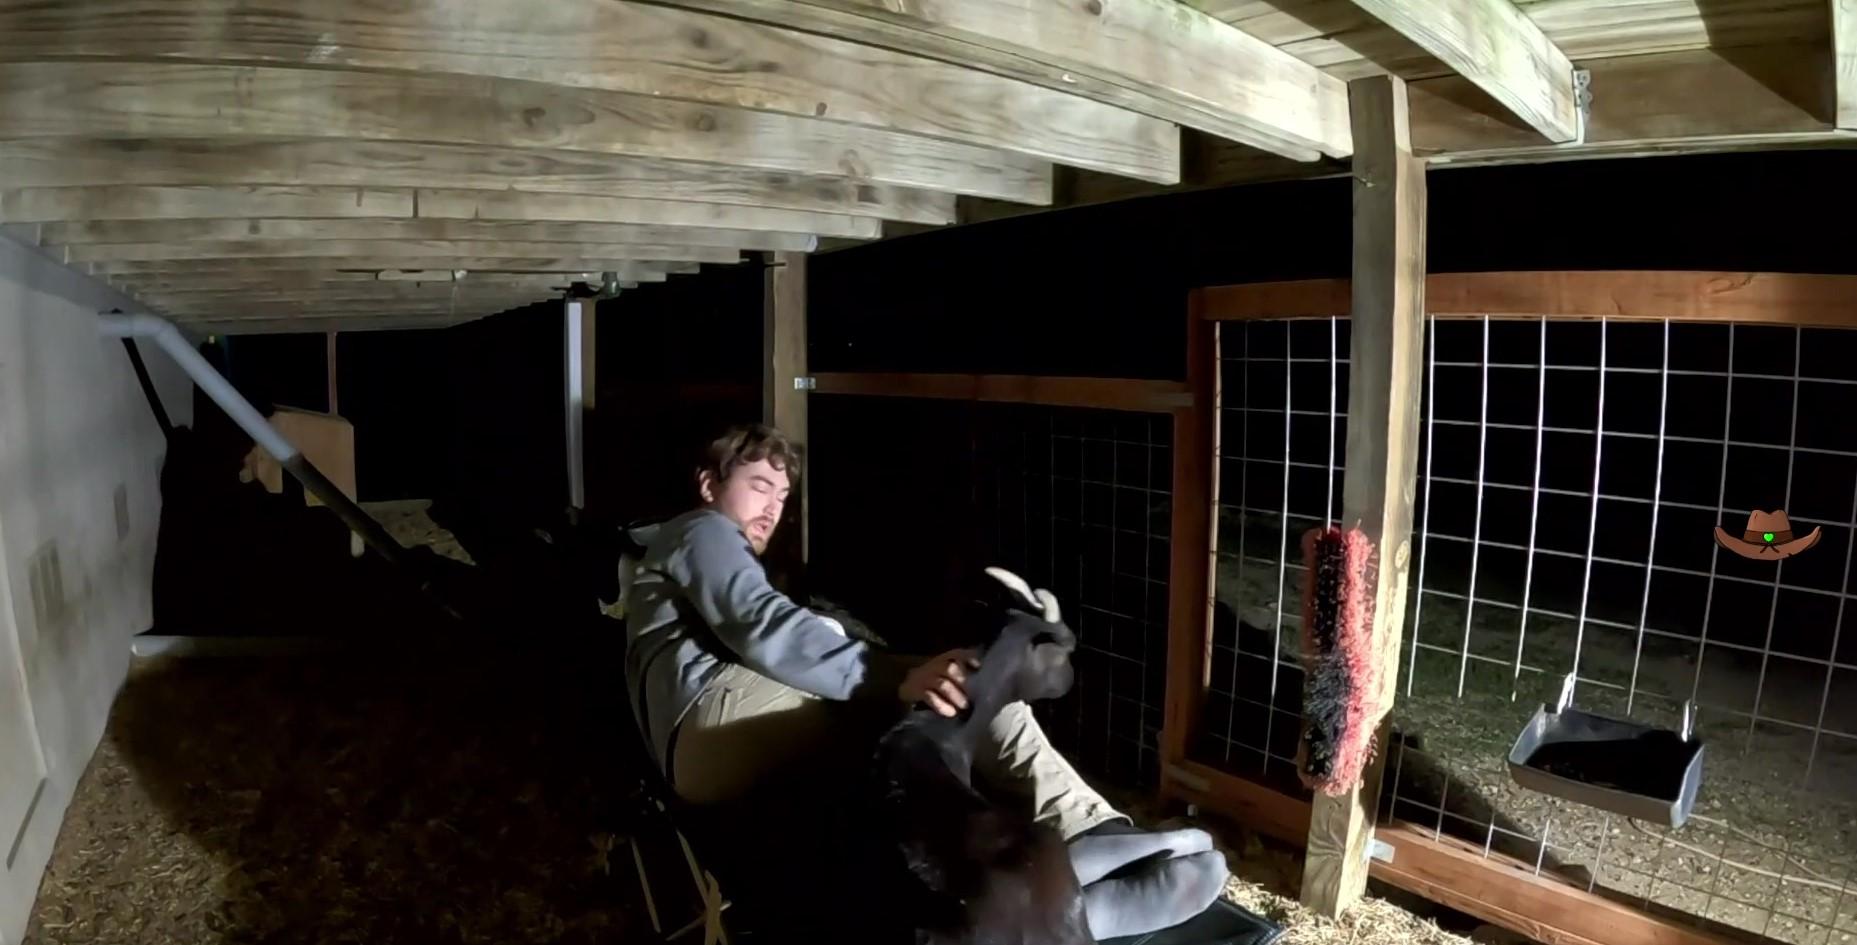 Streamer sleeps in goat pen